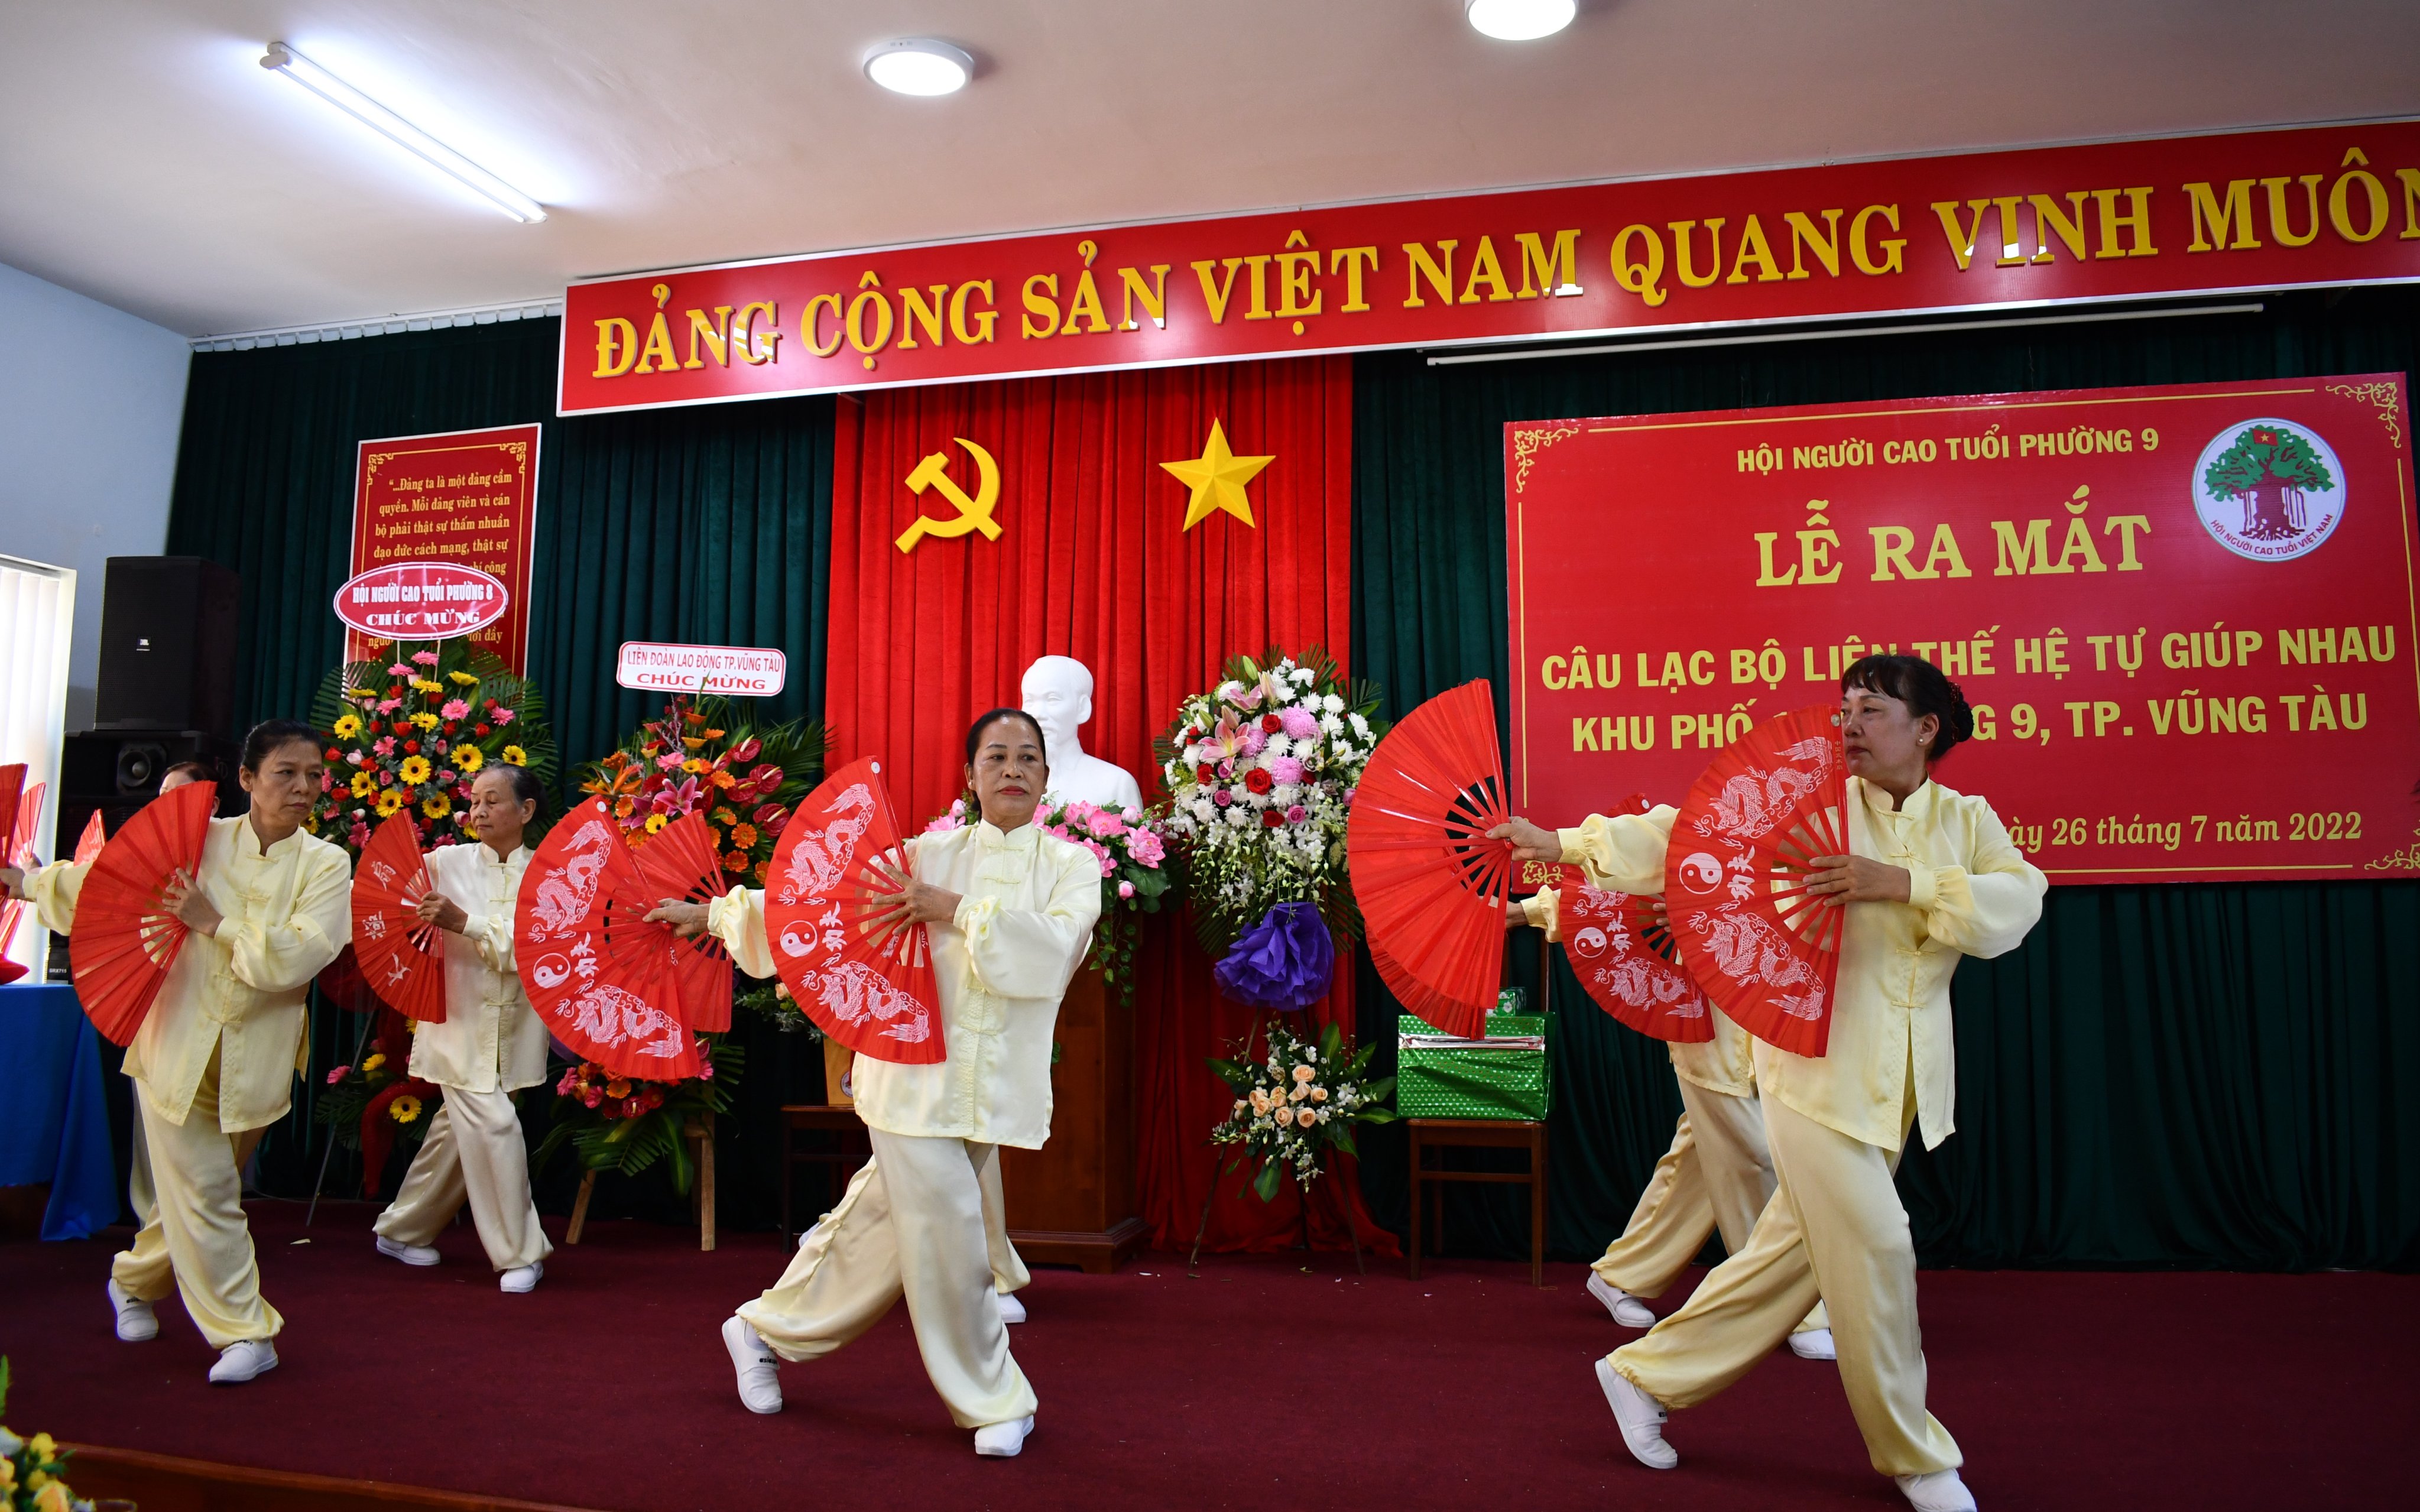 Bà Nguyễn Thị Dung được CLB Liên Thế hệ tự giúp nhau Khu phố 1, phường 9 hỗ trợ số vốn 5 triệu đồng không lấy lãi để buôn bán tại chợ phường 9, TP. Vũng Tàu tăng thu nhập.